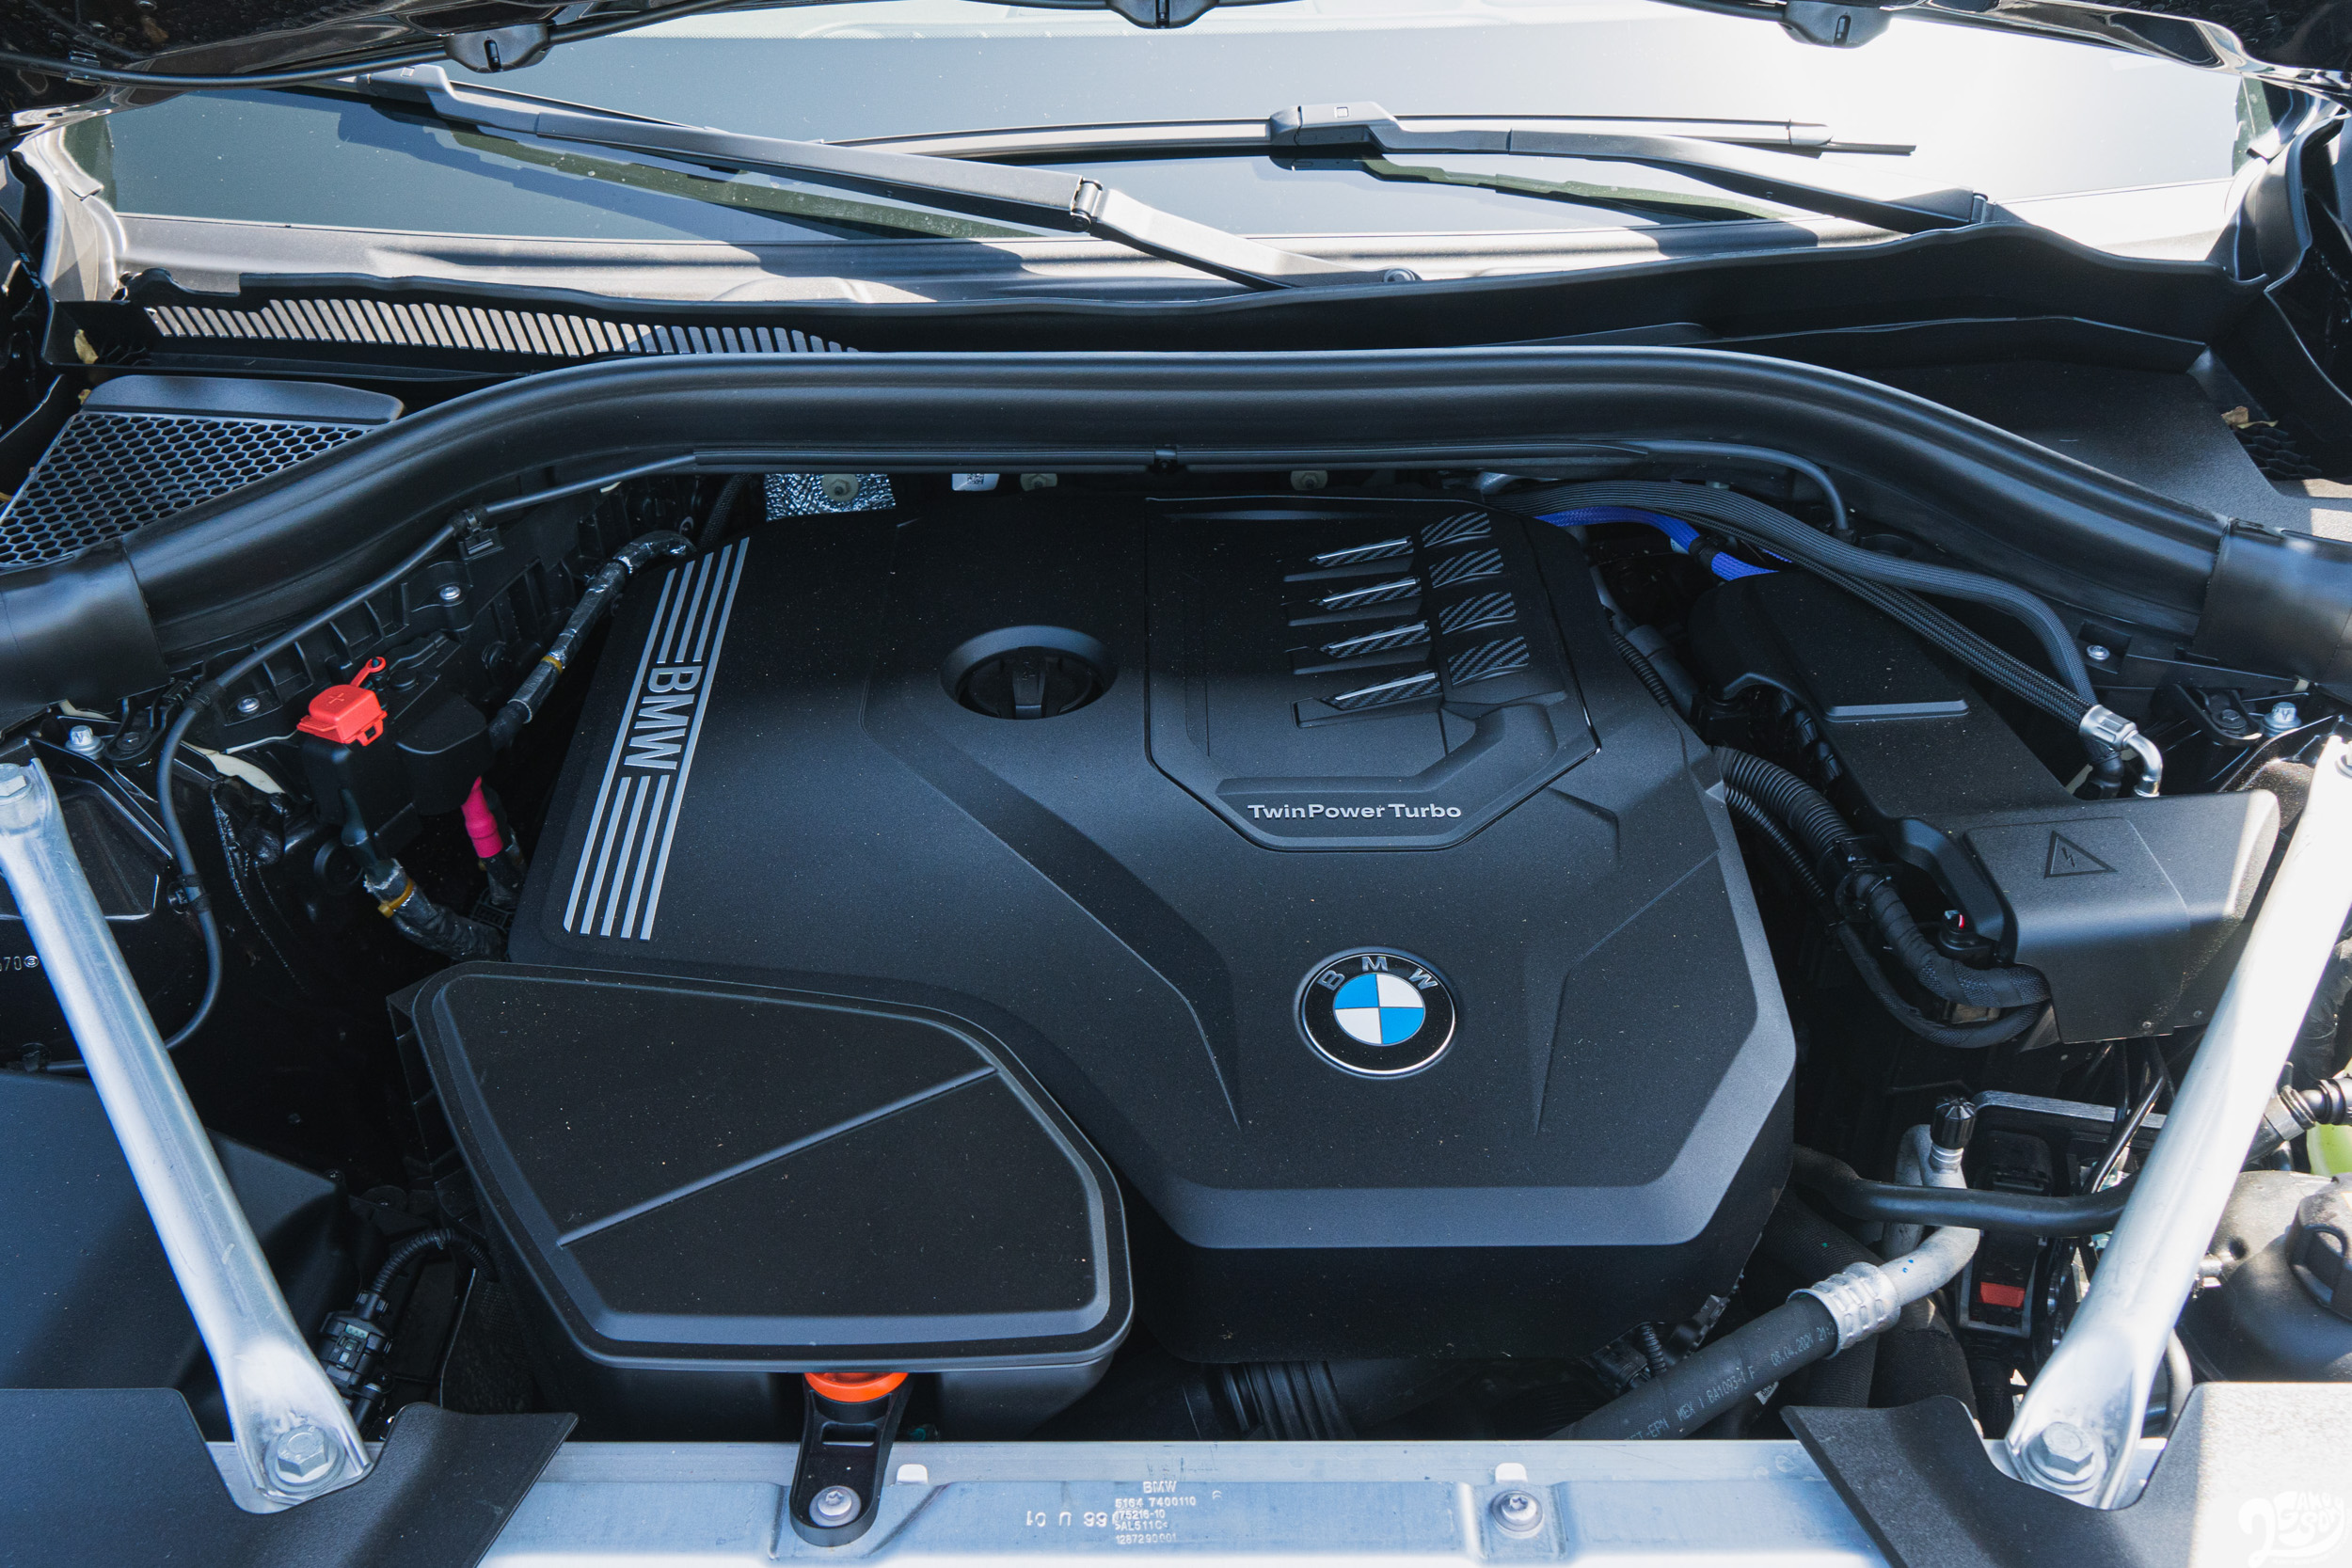 代號 B48 的 2.0 升直四渦輪引擎已經在 BMW 旗下幾乎所有產品線遍地開花；雖然在動力上歸因於排放法規緣故有稍微下修，但 48V 複合動力的進駐讓實際體感幾乎沒有差異。